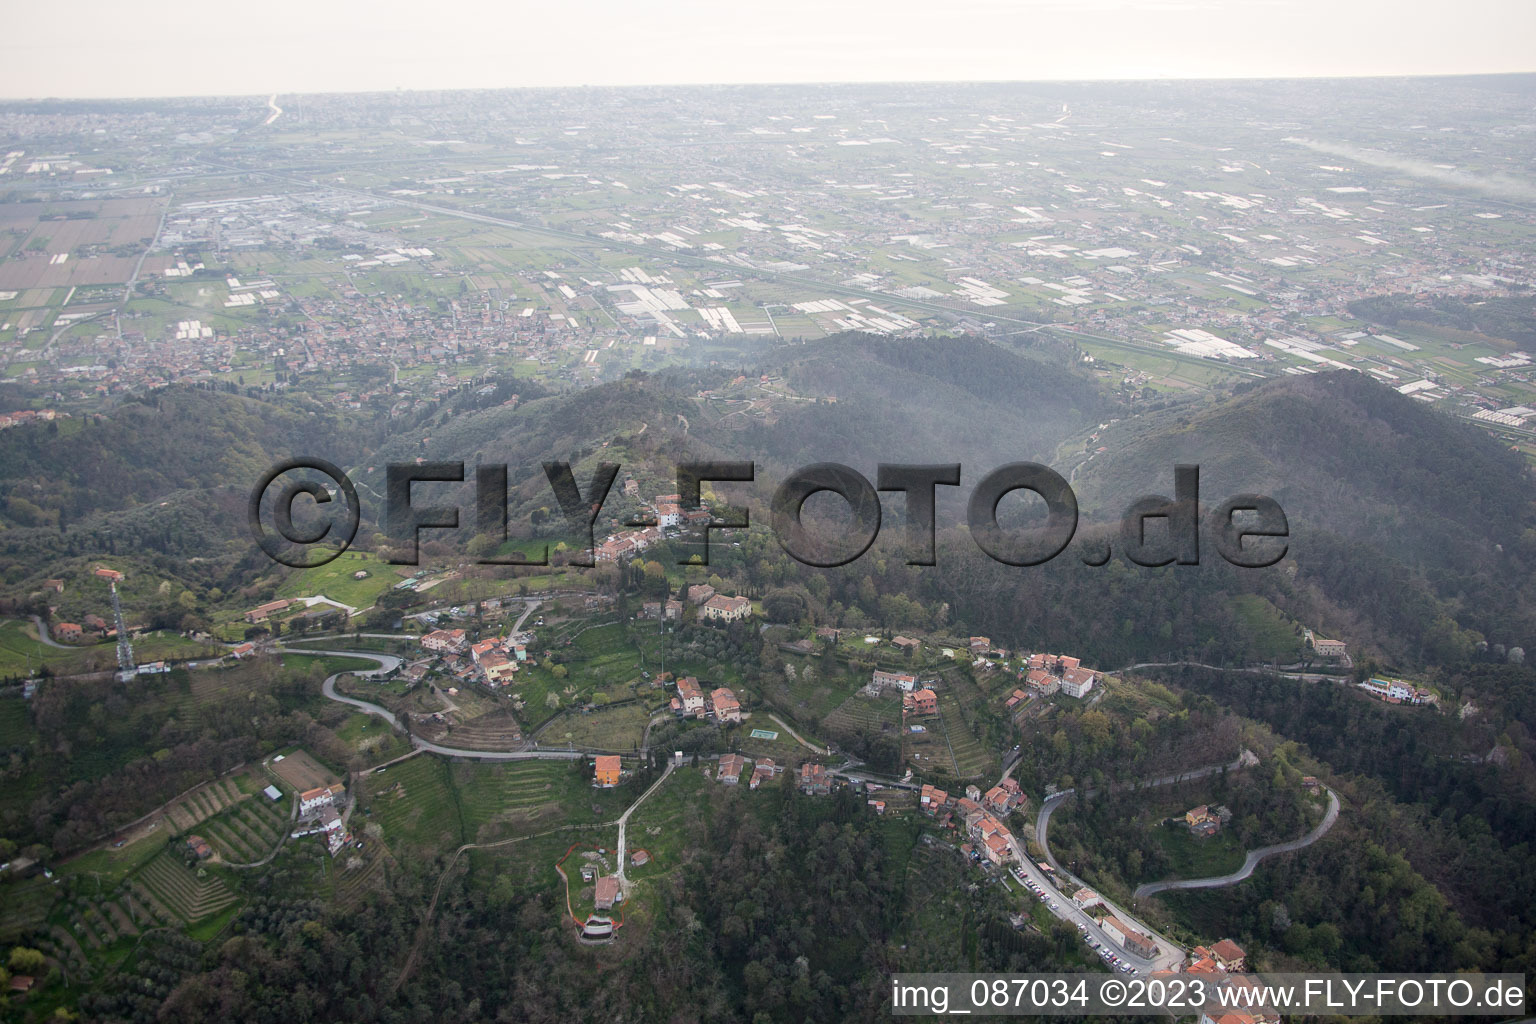 Pedona dans le département Toscane, Italie hors des airs